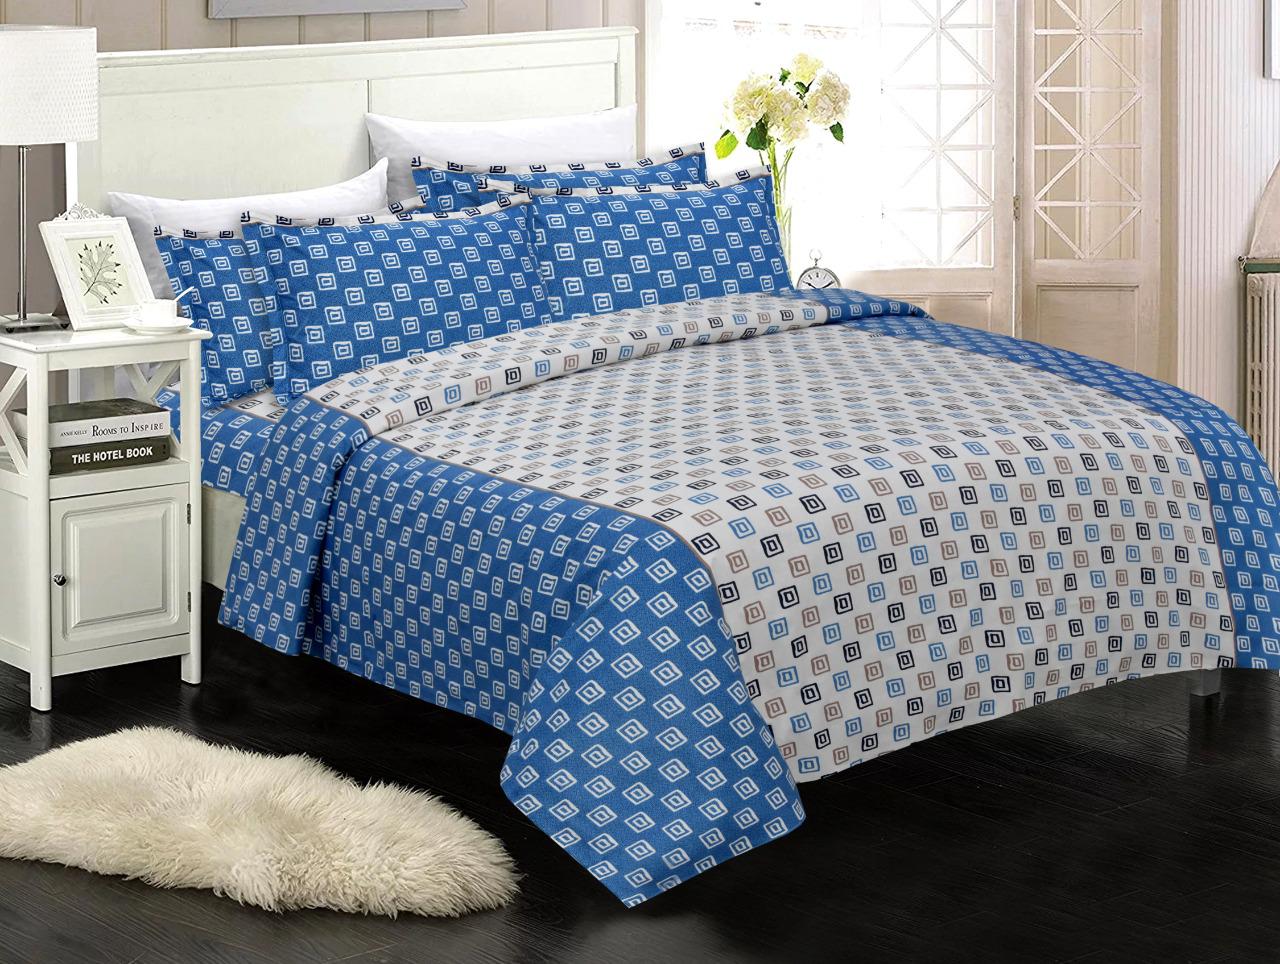 Blue Checks Print King Size Cotton Bed Sheet